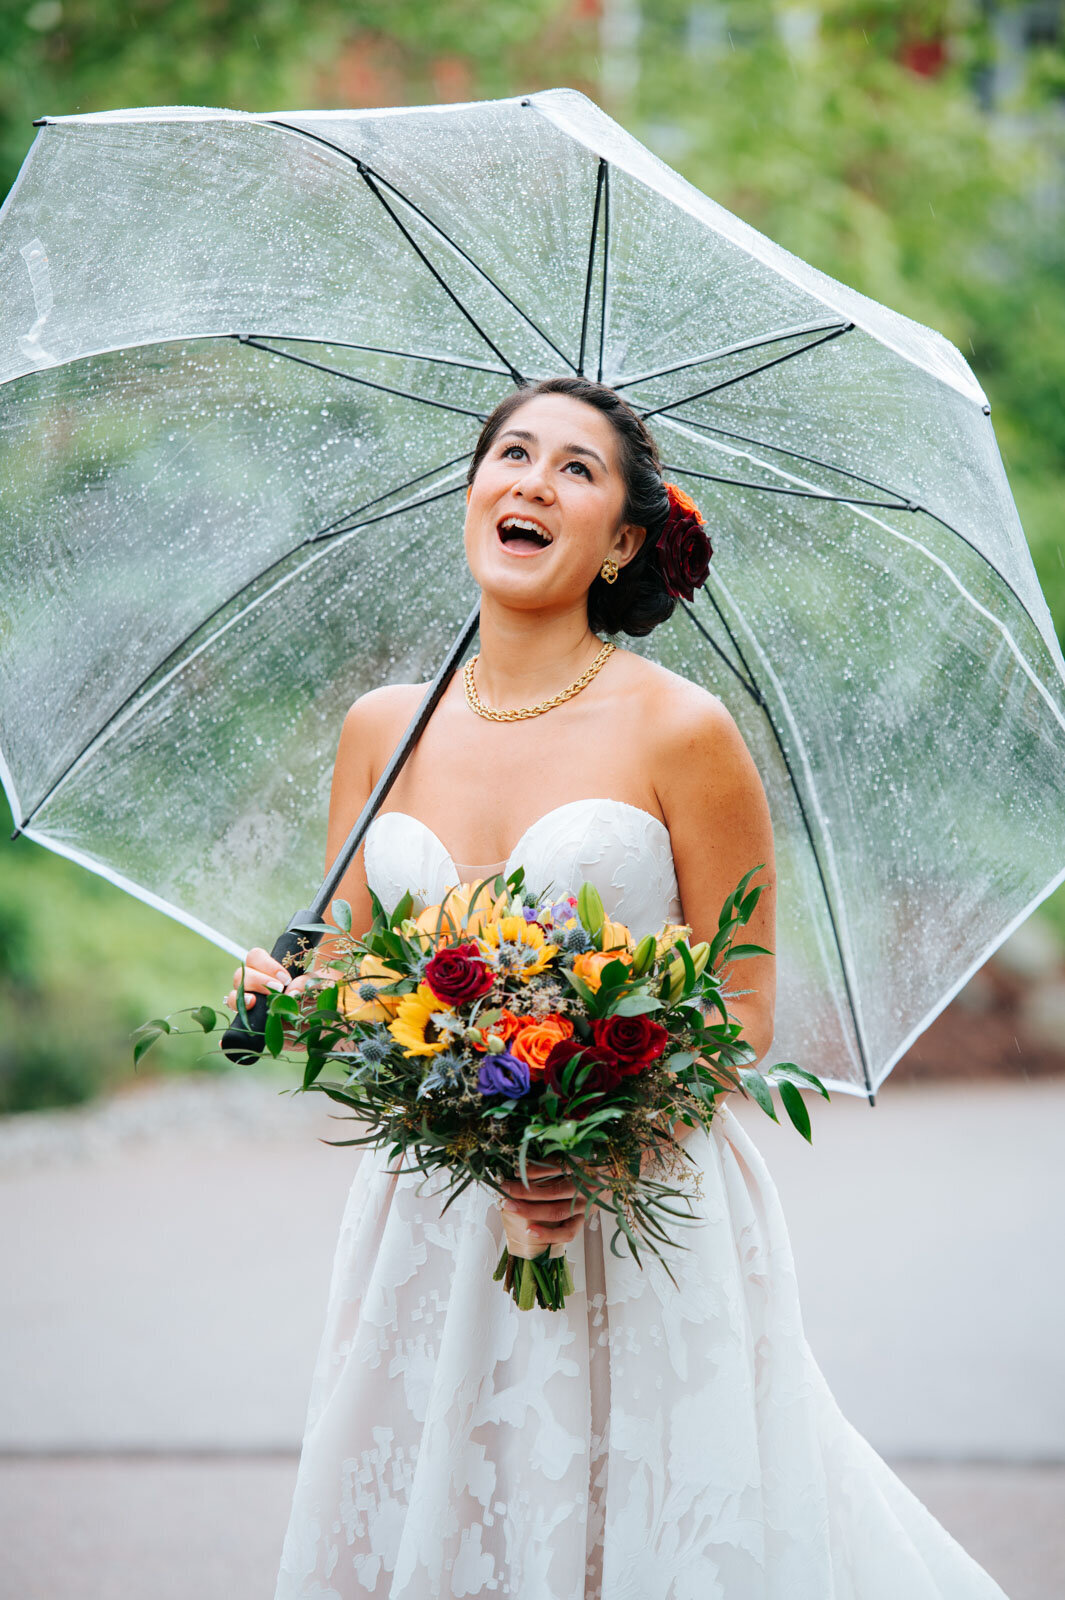 bride dancing with umbrella in rain at sugarbush resort vermont wedding